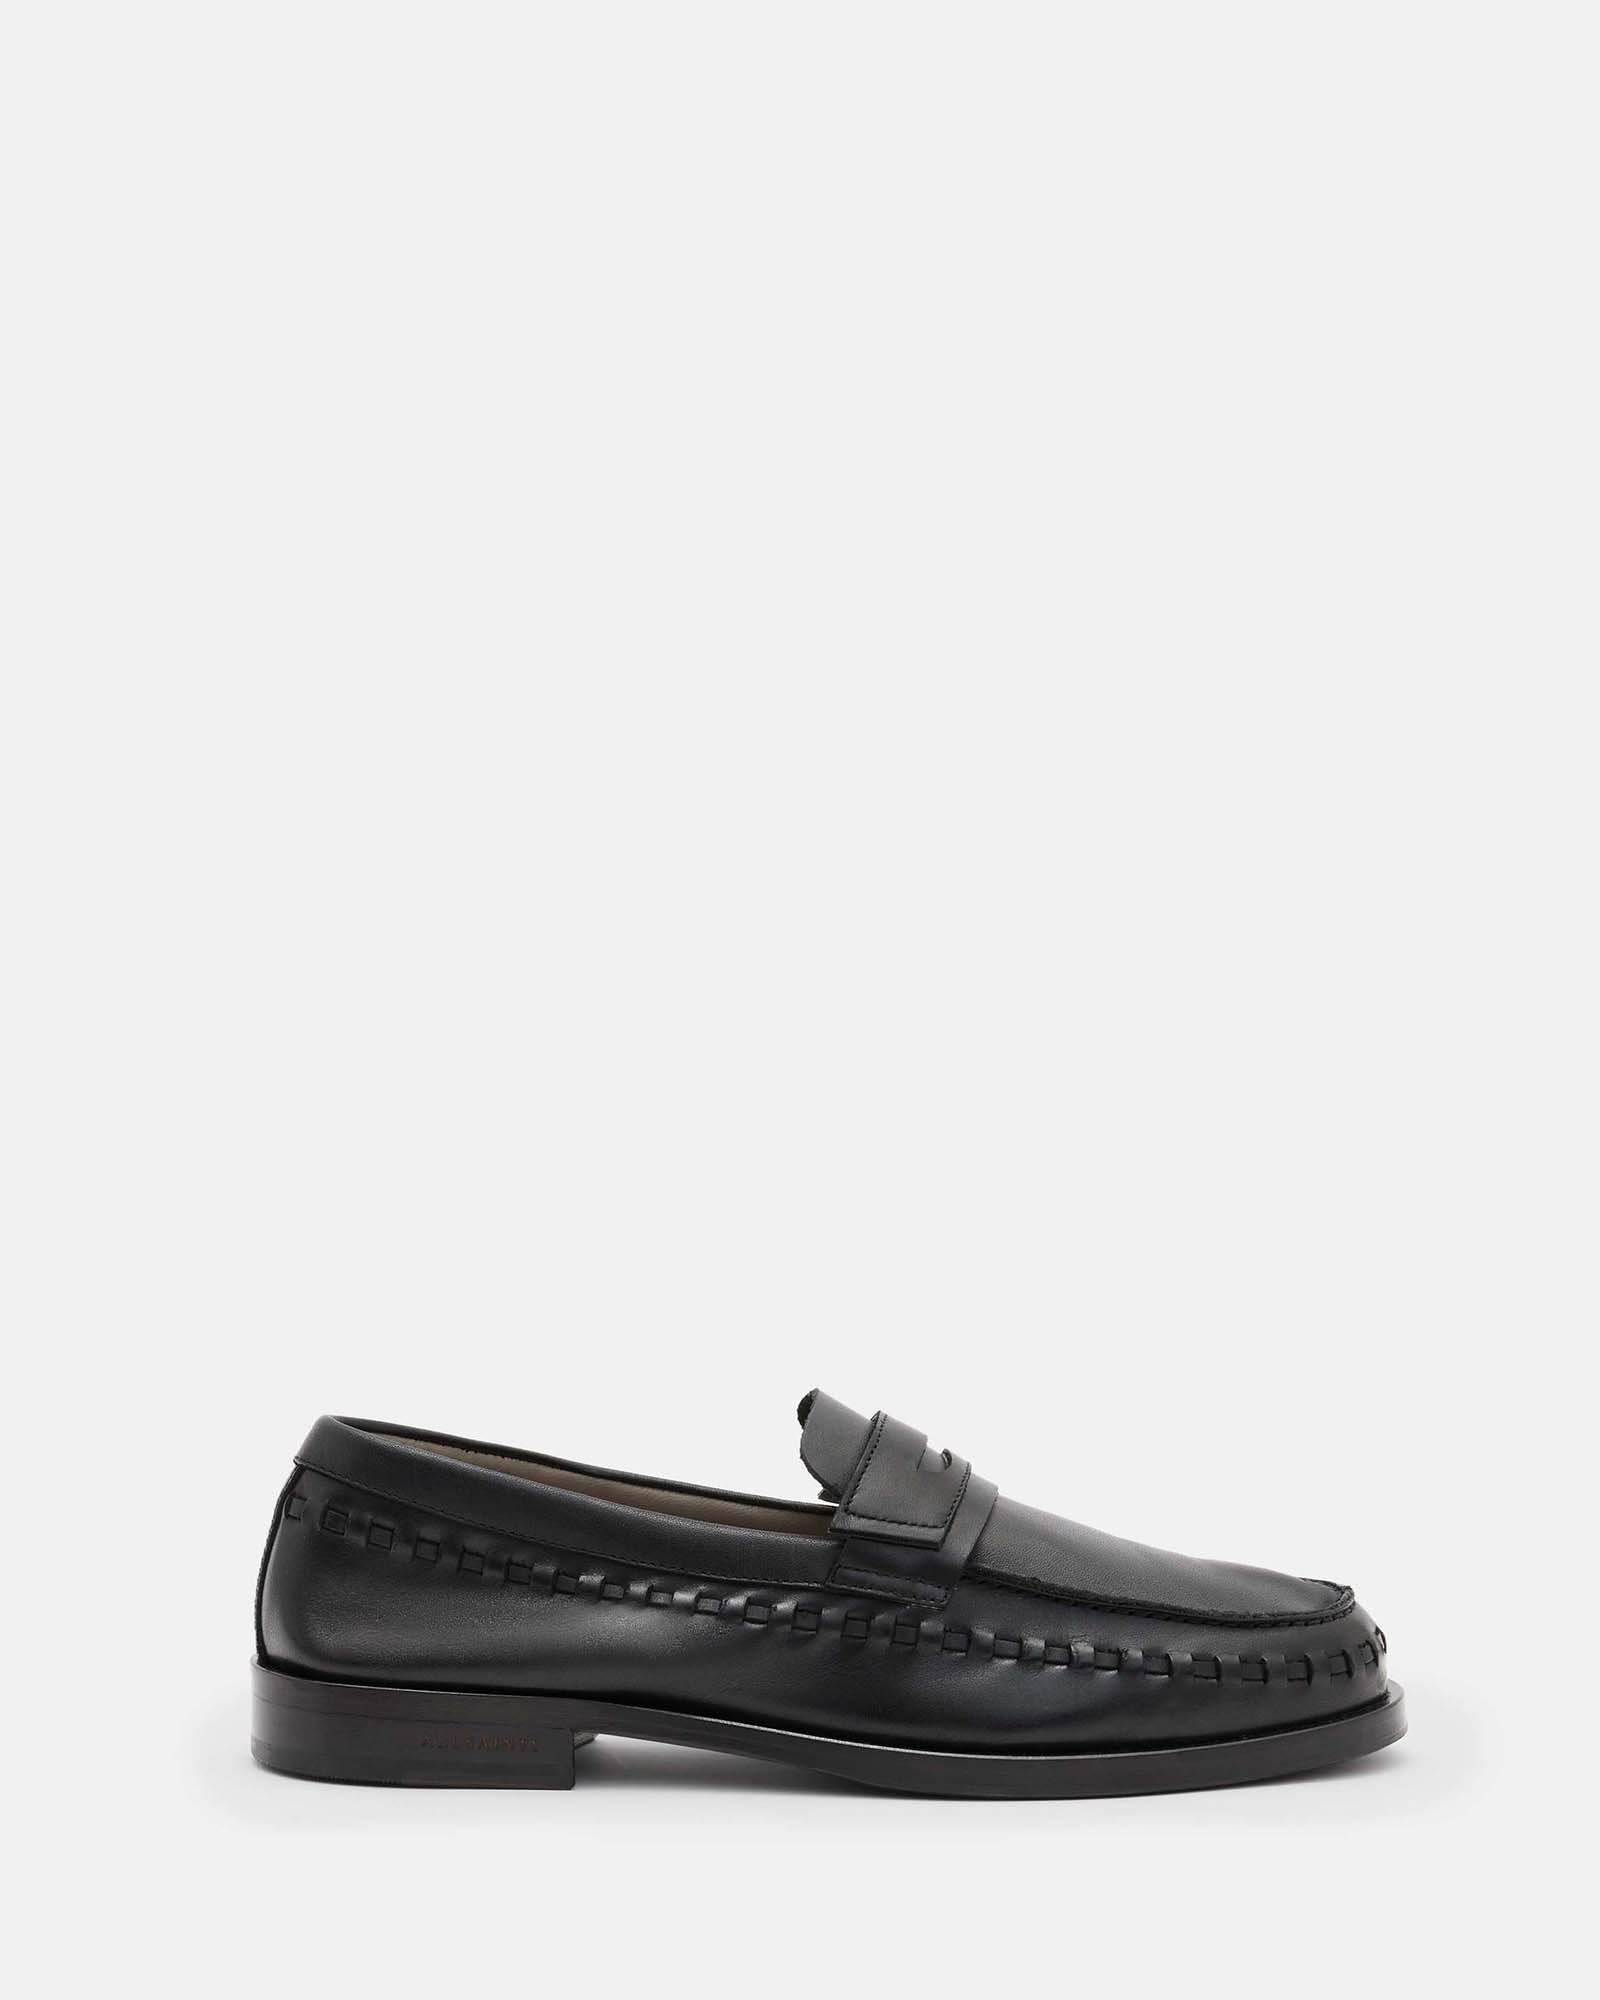 AllSaints Sammy Leather Loafer Shoes,, Black